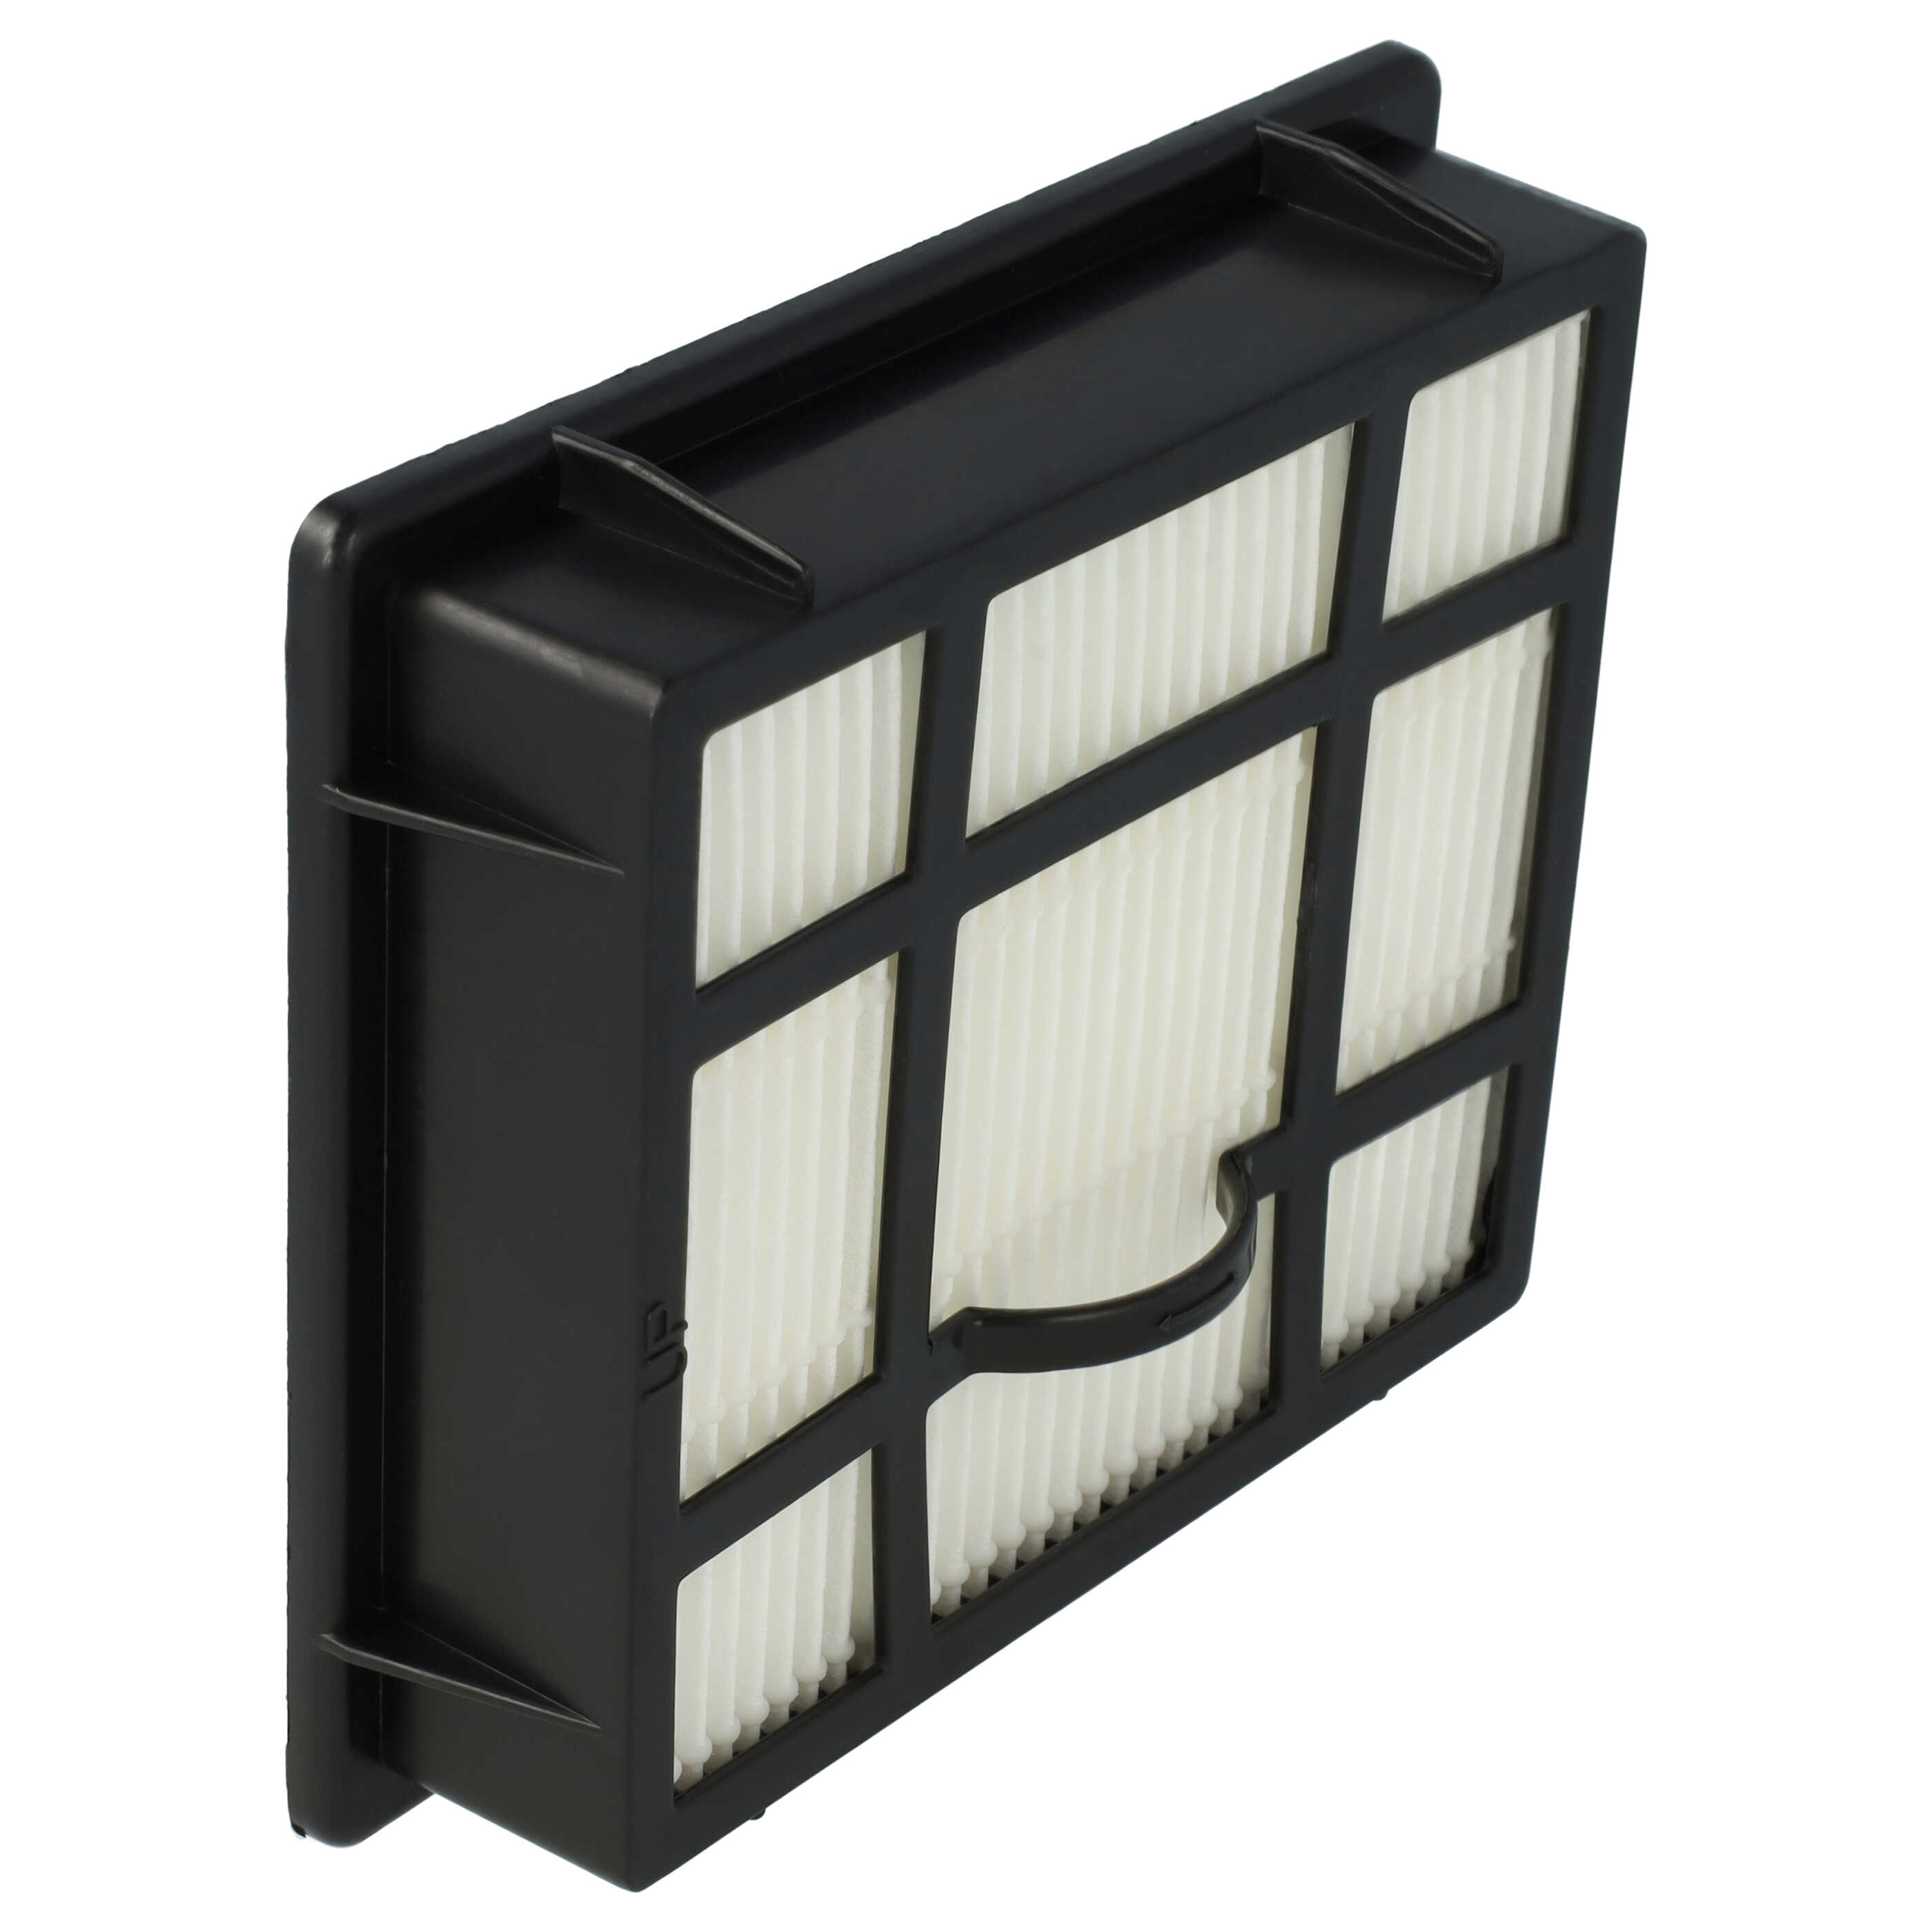 Filtro sostituisce AEG/Electrolux 4055116125, 1924992207 per aspirapolvere - filtro HEPA, nero / bianco